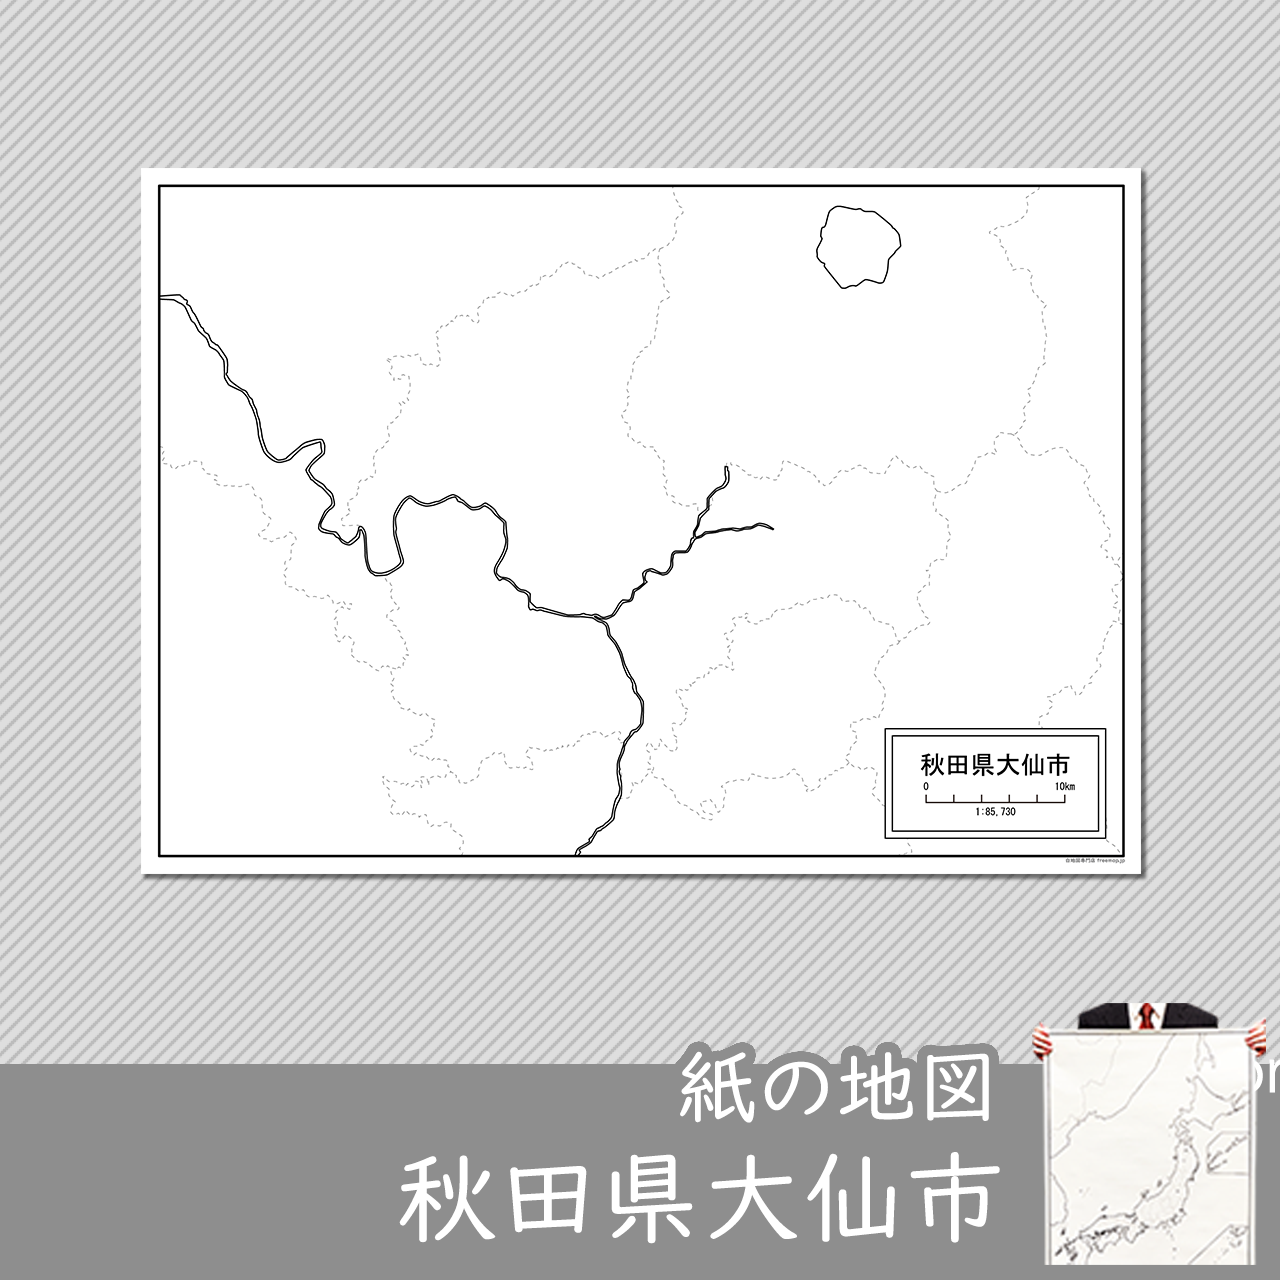 大仙市の紙の白地図のサムネイル